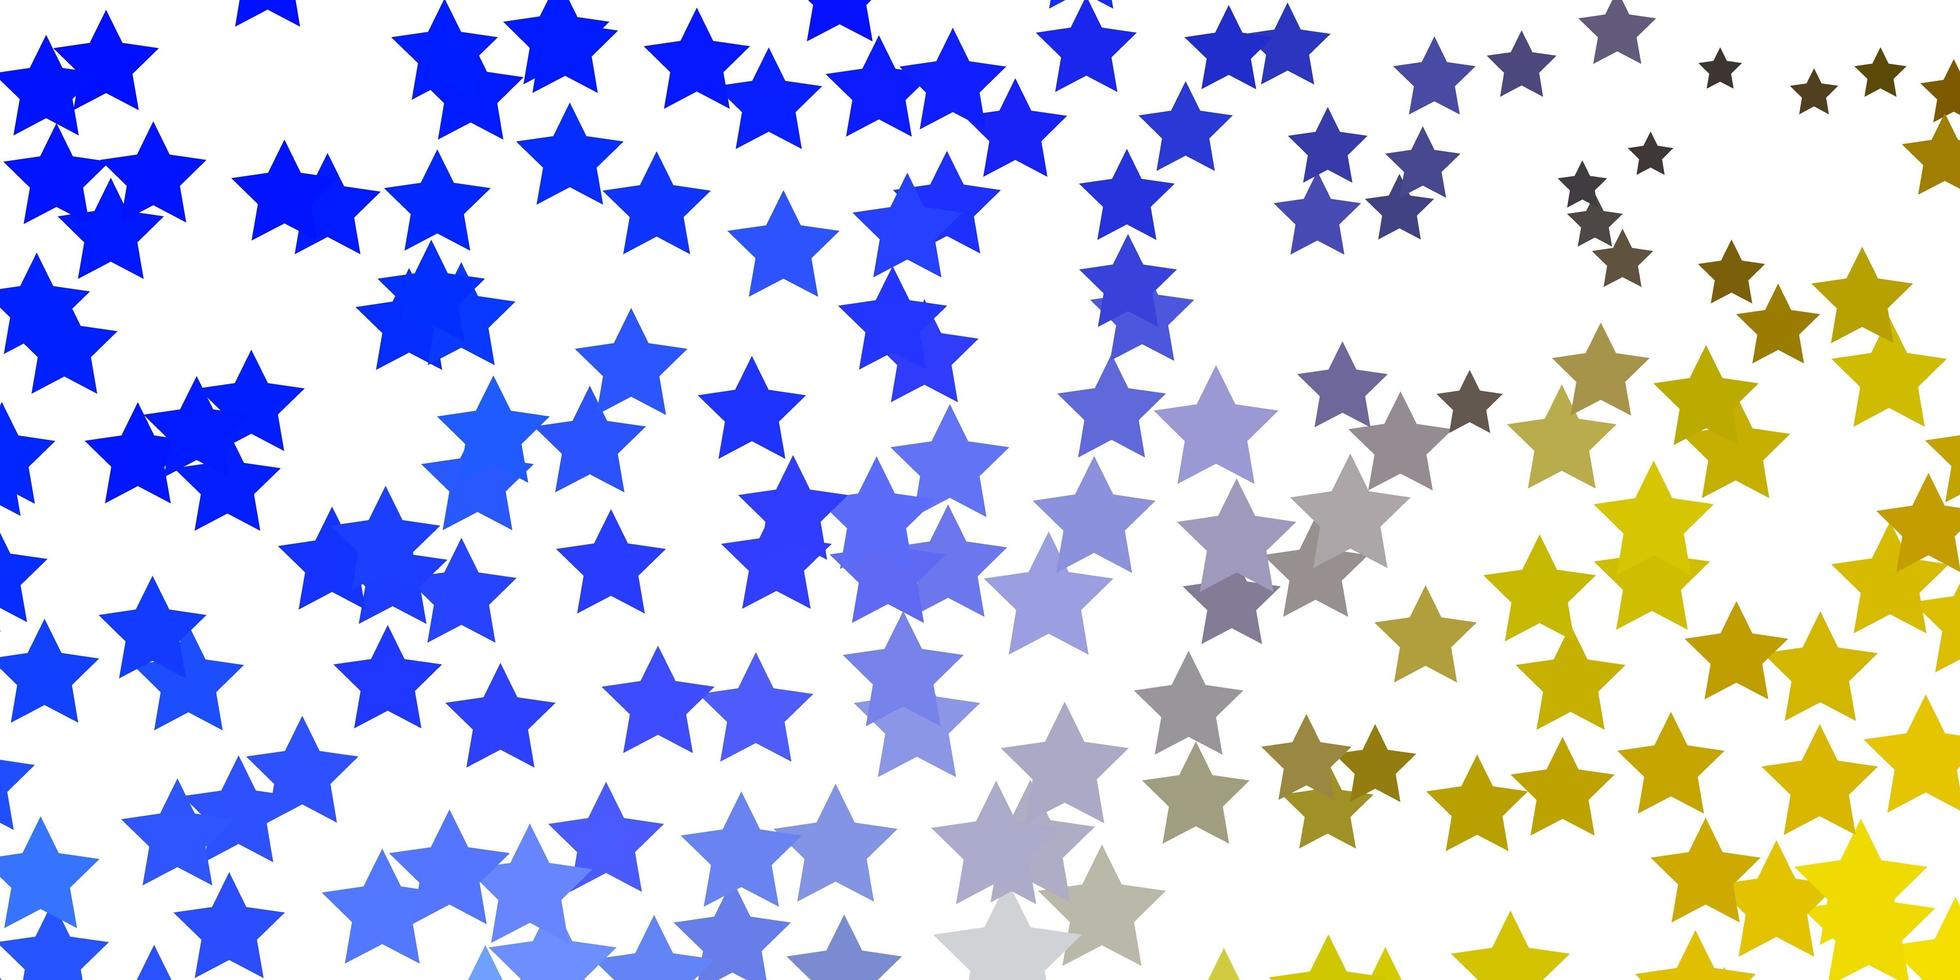 ljusblå, gul vektorbakgrund med små och stora stjärnor. vektor